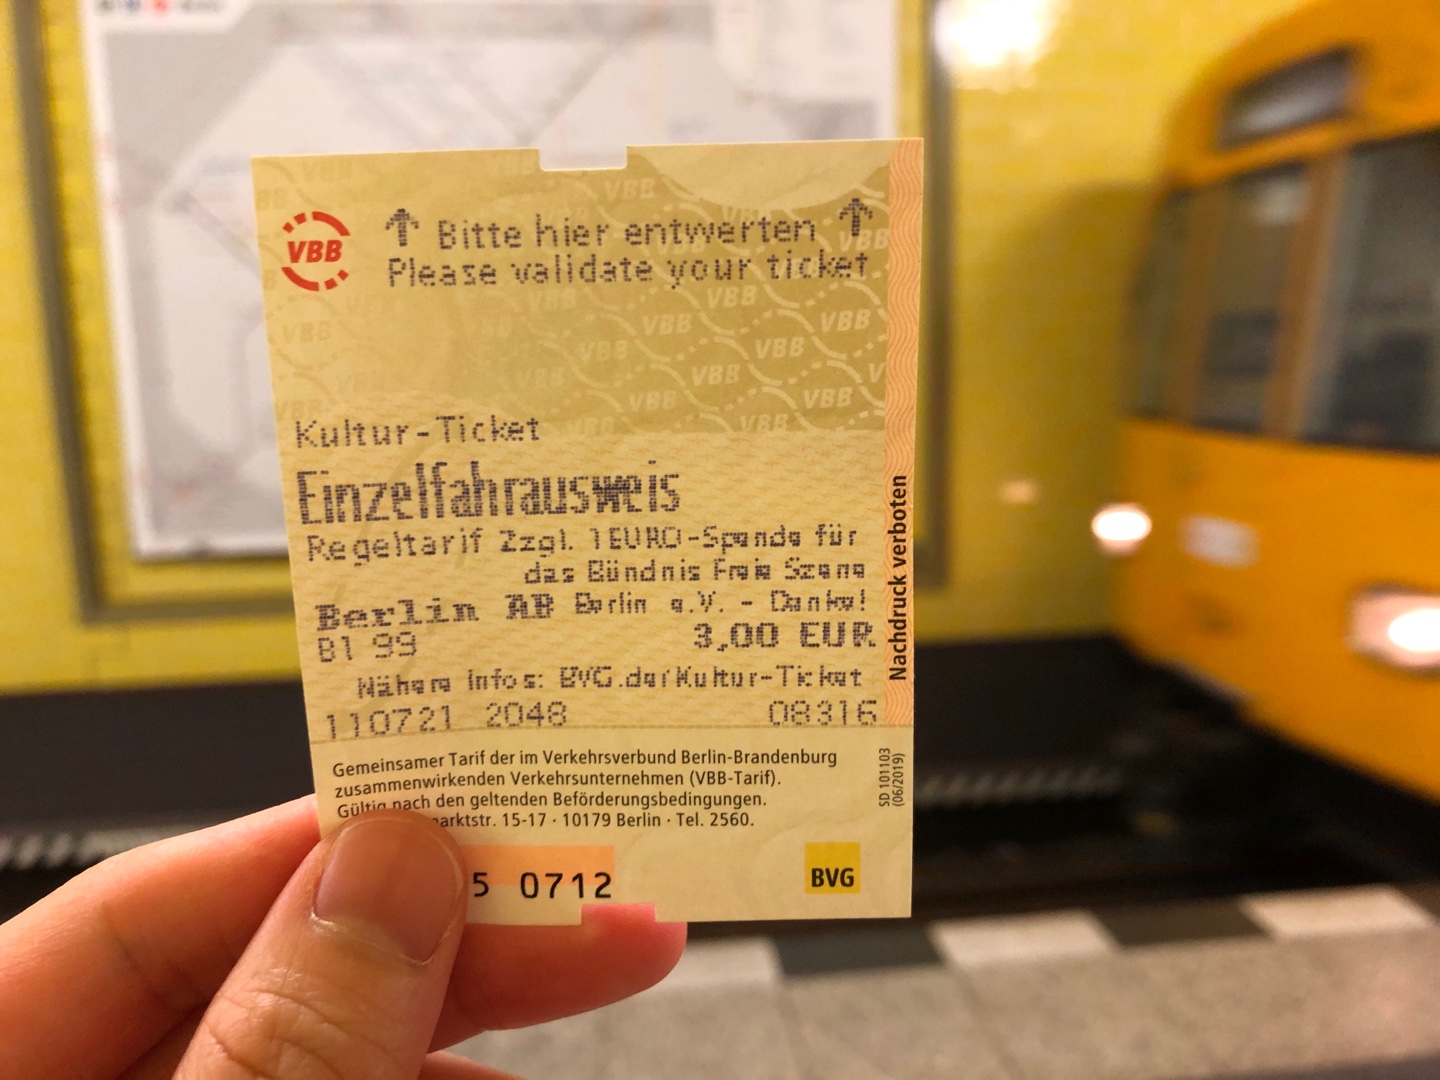 <베를린교통공사에서 발행하는 문화티켓. 티켓값 총 4유로를 지불하면 1유로는 베를린 예술가들에게 기부된다. - 출처 : 통신원 촬영>